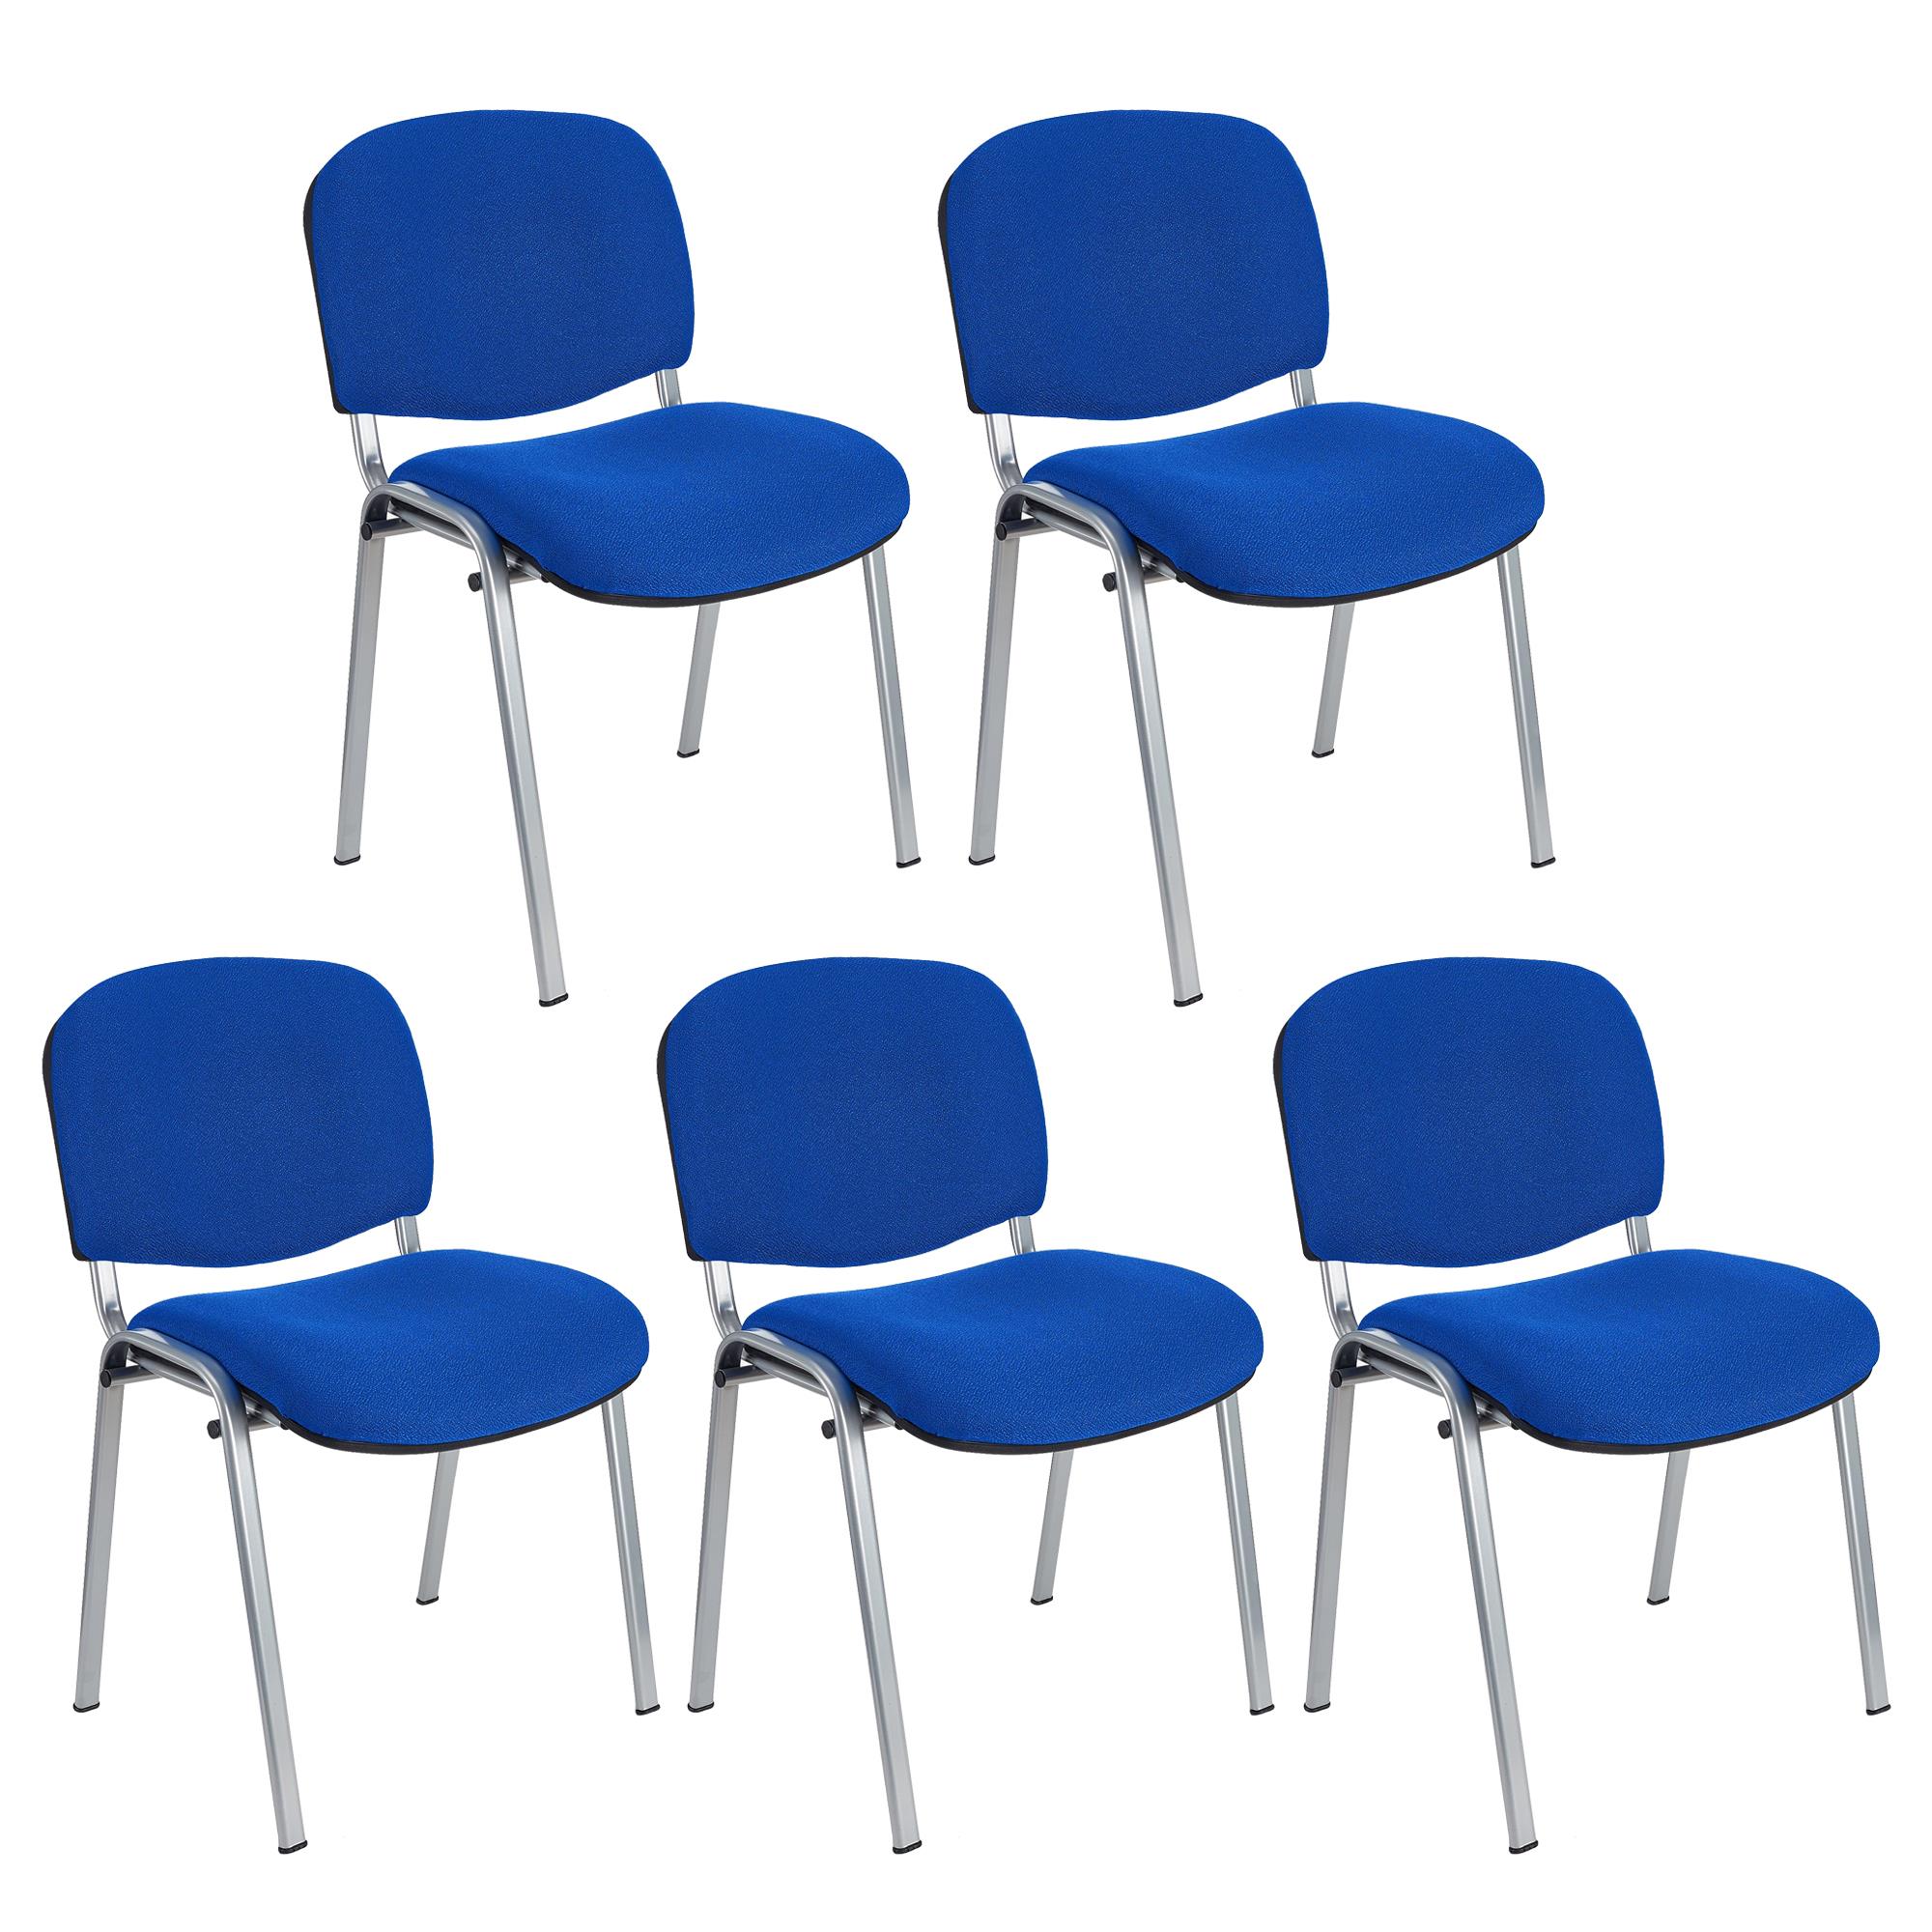 Lote 5 Cadeiras de Visita MOBY BASE, Confortável e Prática, Pernas Cinza, Cor Azul